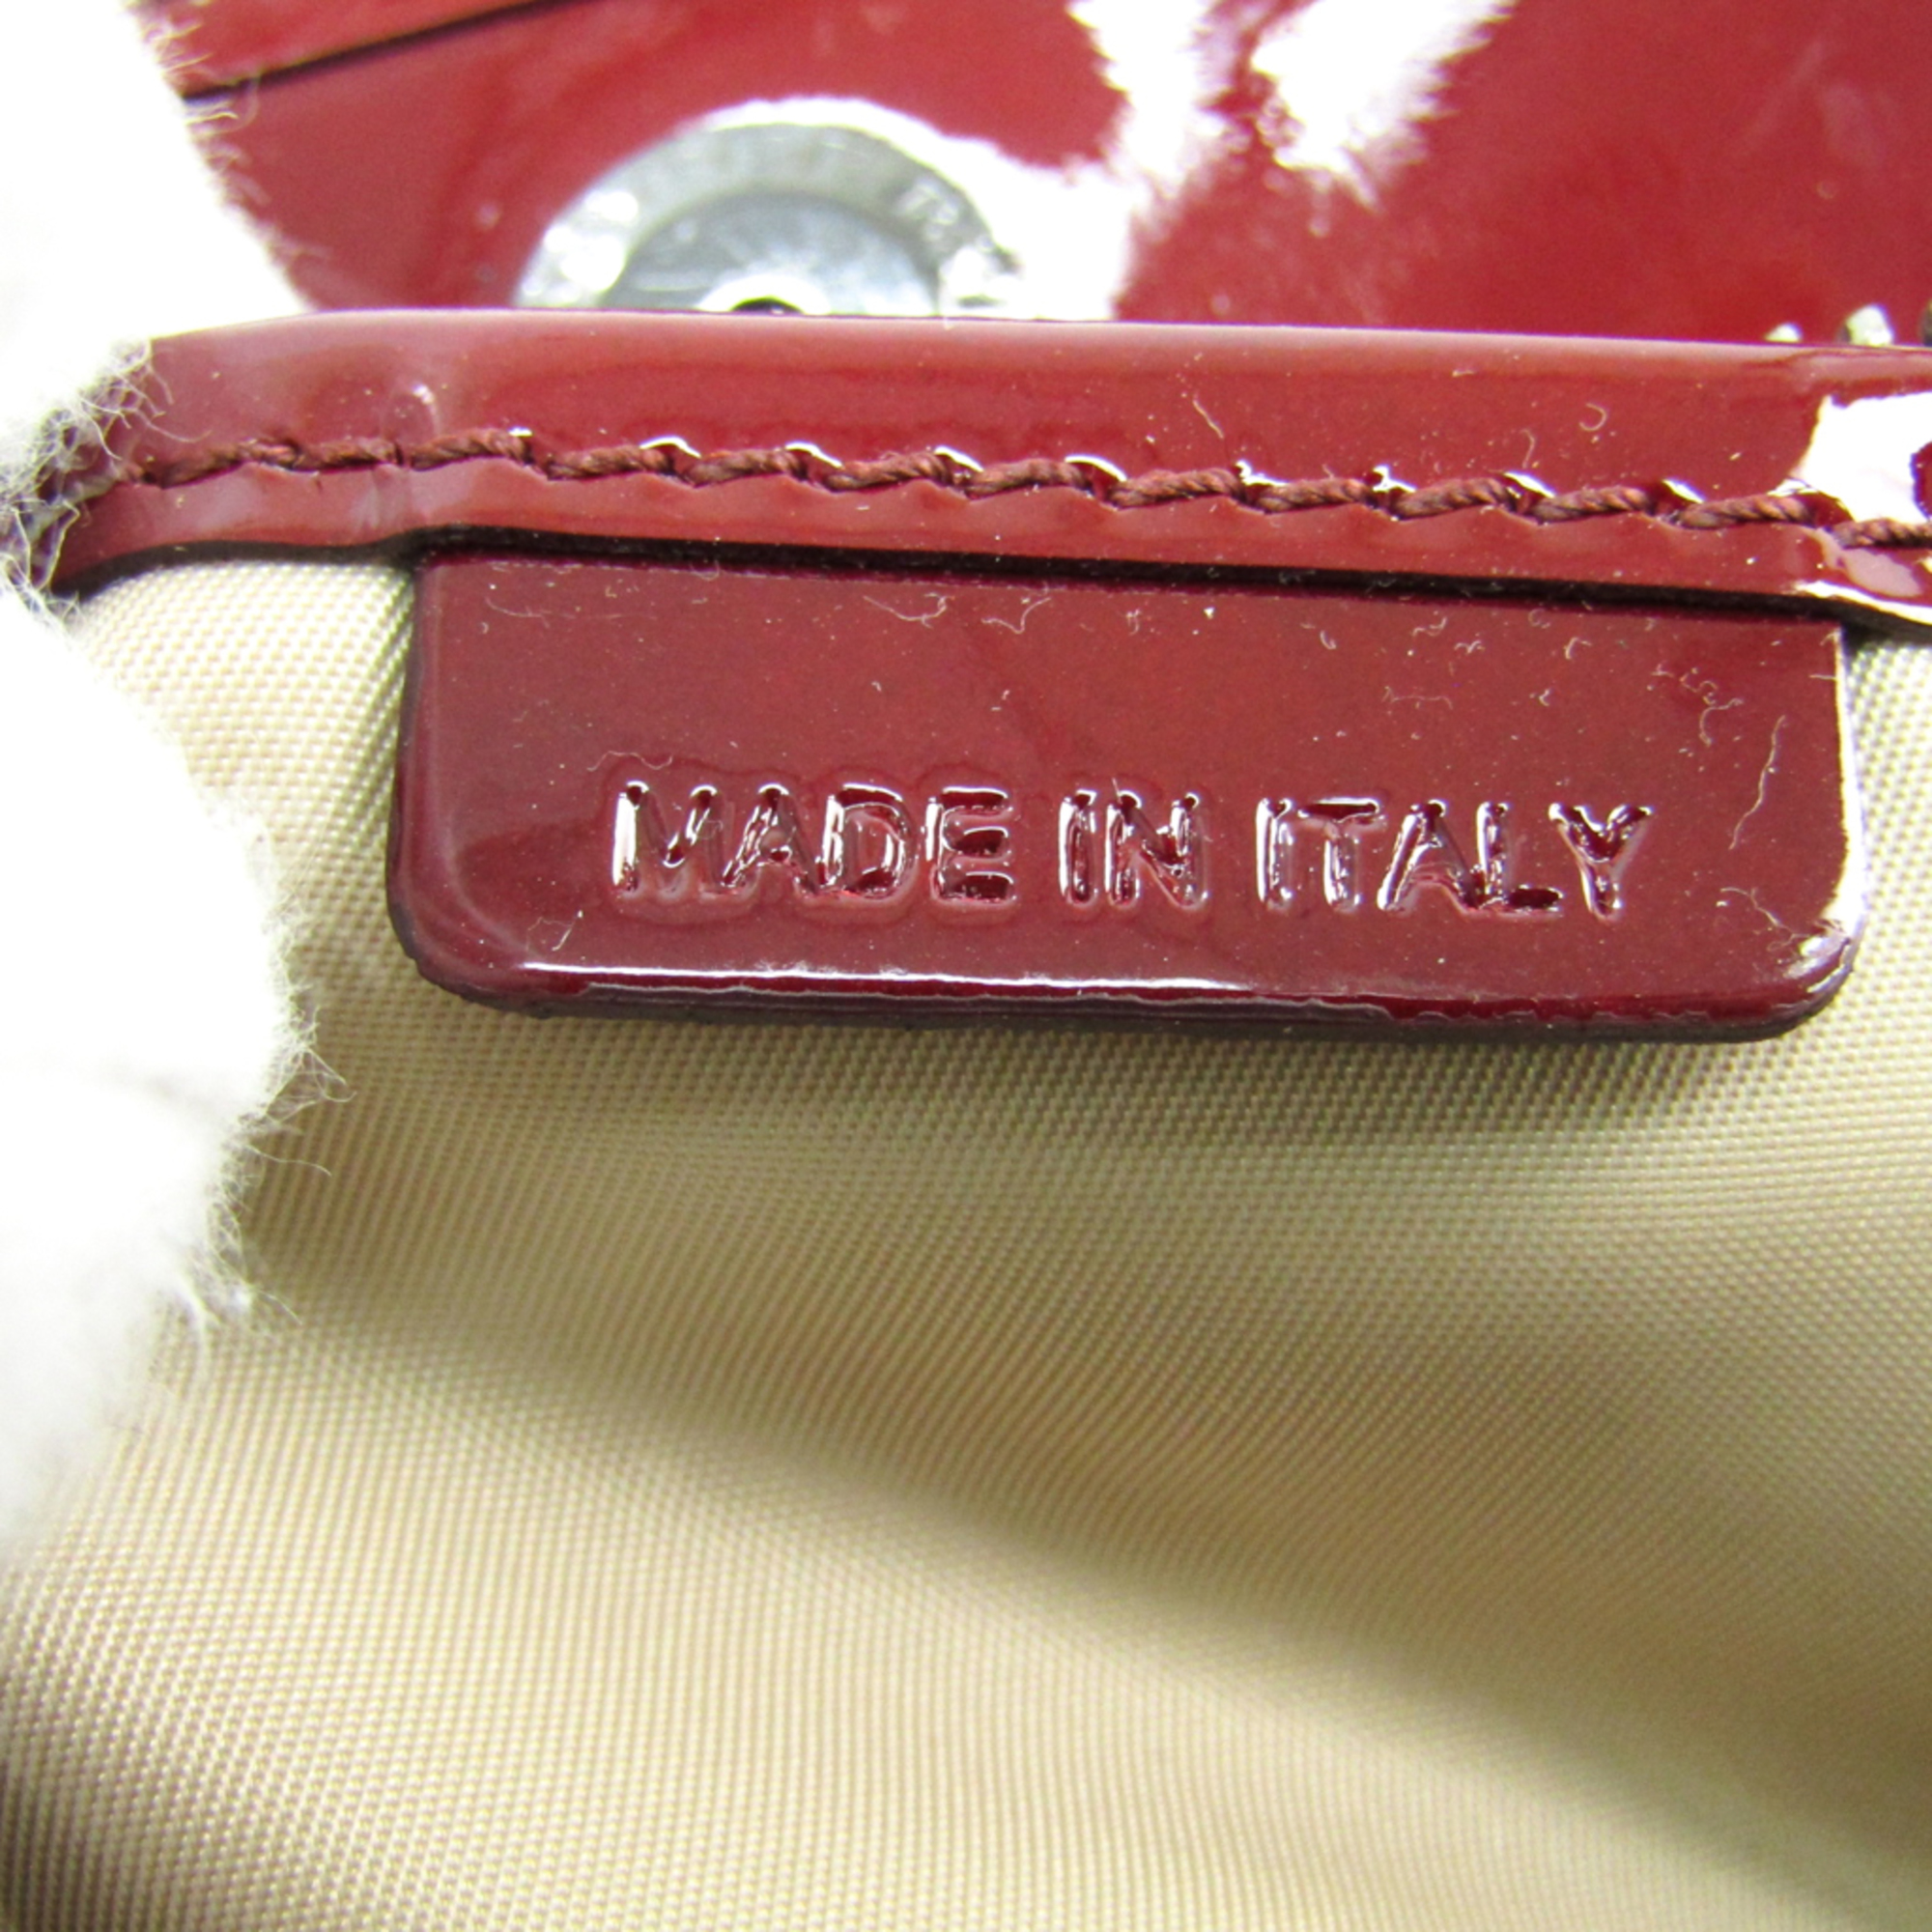 Burberry Women's PVC,Patent Leather Tote Bag Beige,Bordeaux